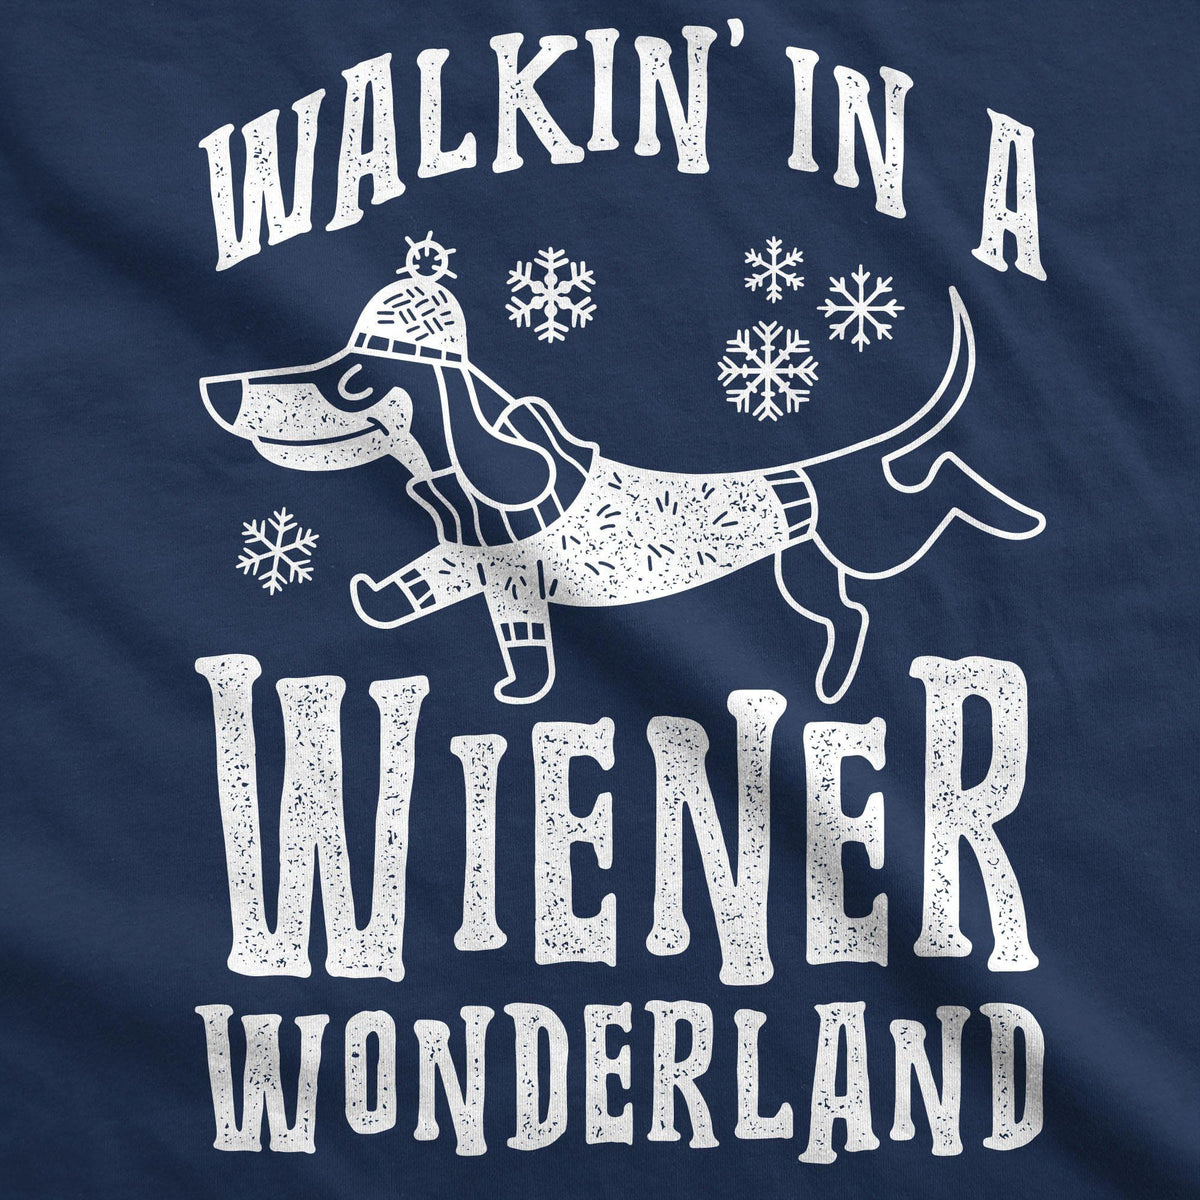 Walkin In A Wiener Wonderland Dog Shirt - Crazy Dog T-Shirts